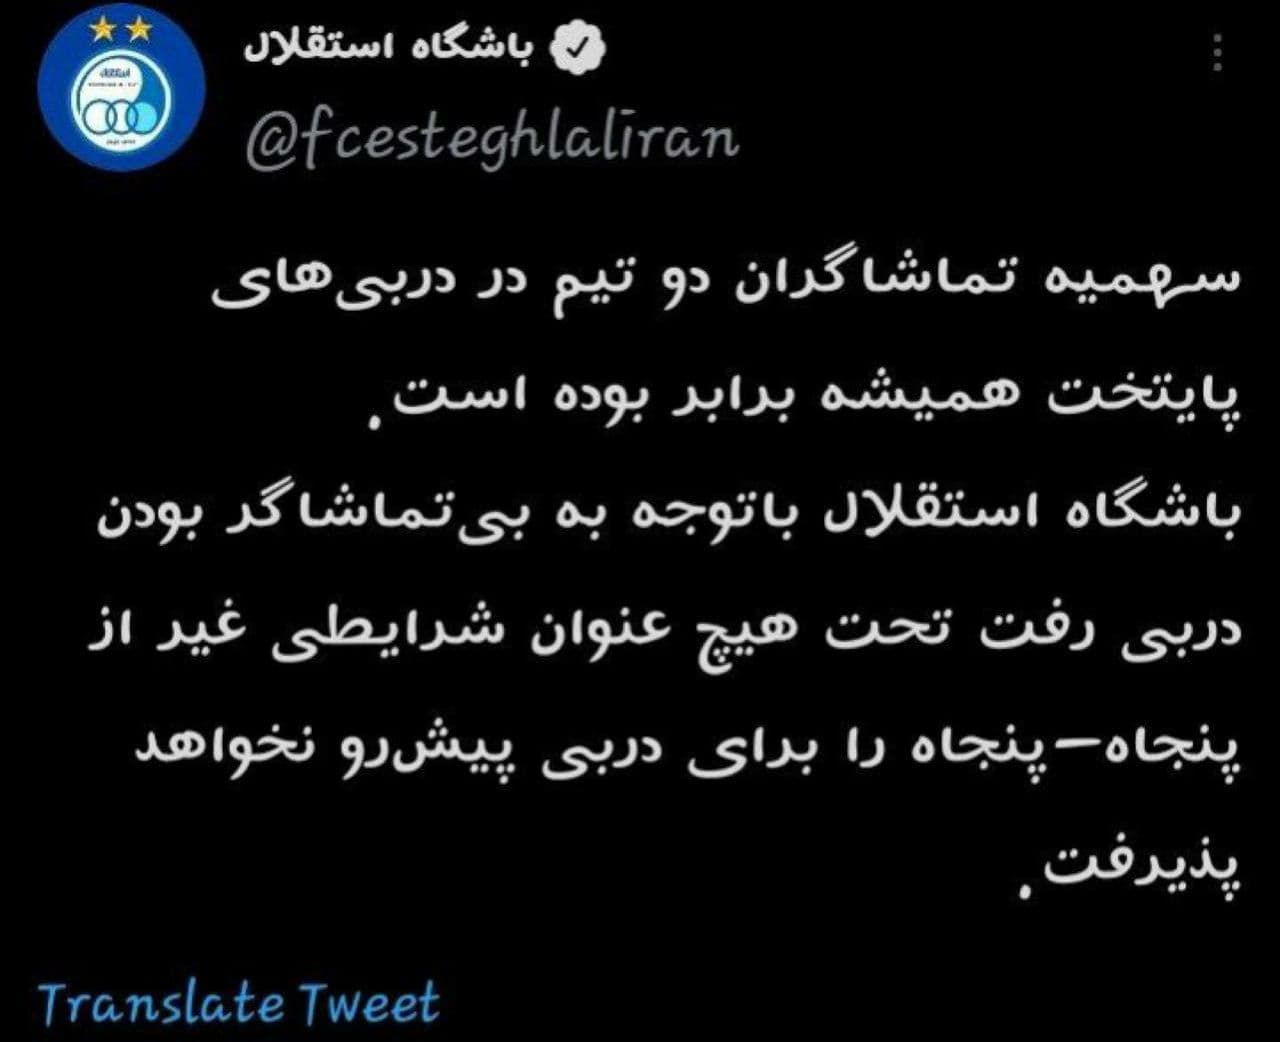 باشگاه استقلال: سهمیه تماشاگران دربی ۵۰-۵۰ باشد